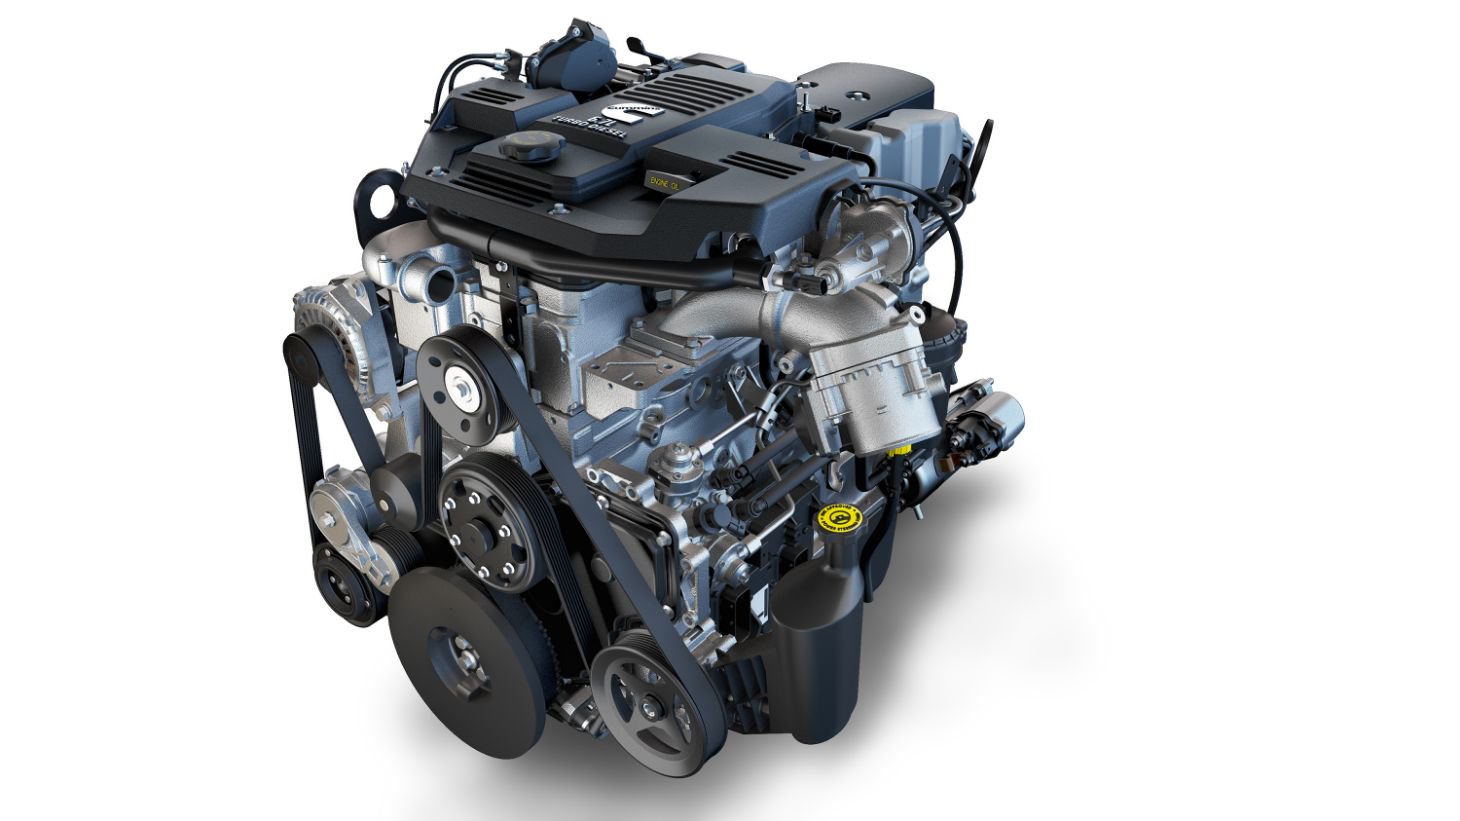 FCA confirma lançamento da nova Ram 2500 para o último trimestre de 2019. Picape chega com 365 cv de potência e 110 kgfm de torque.